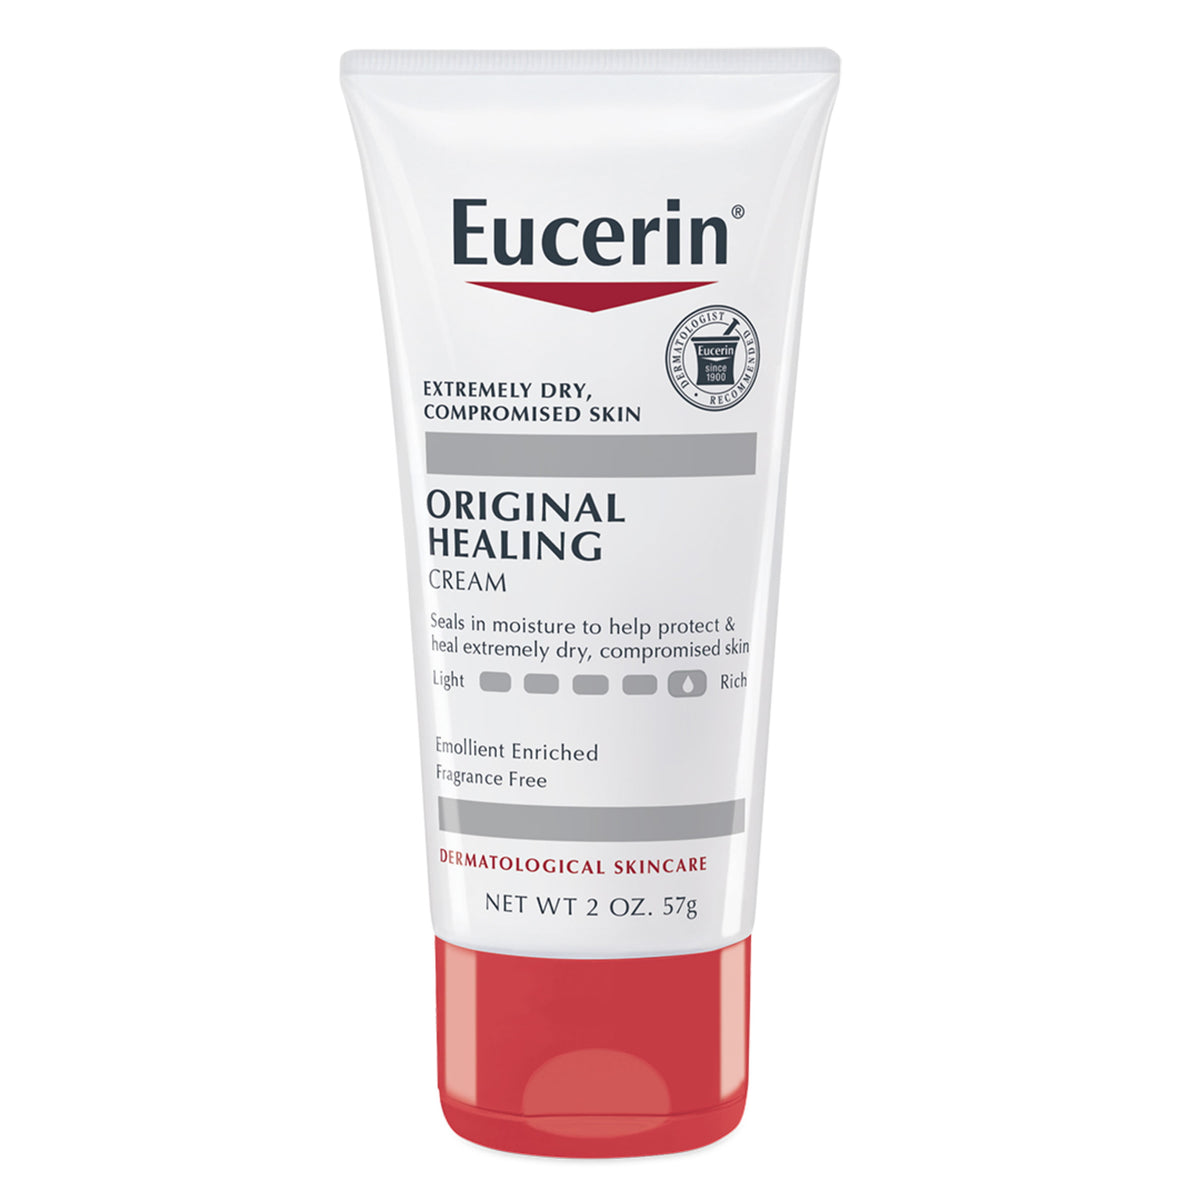 Eucerin Original Healing Cream 2oz